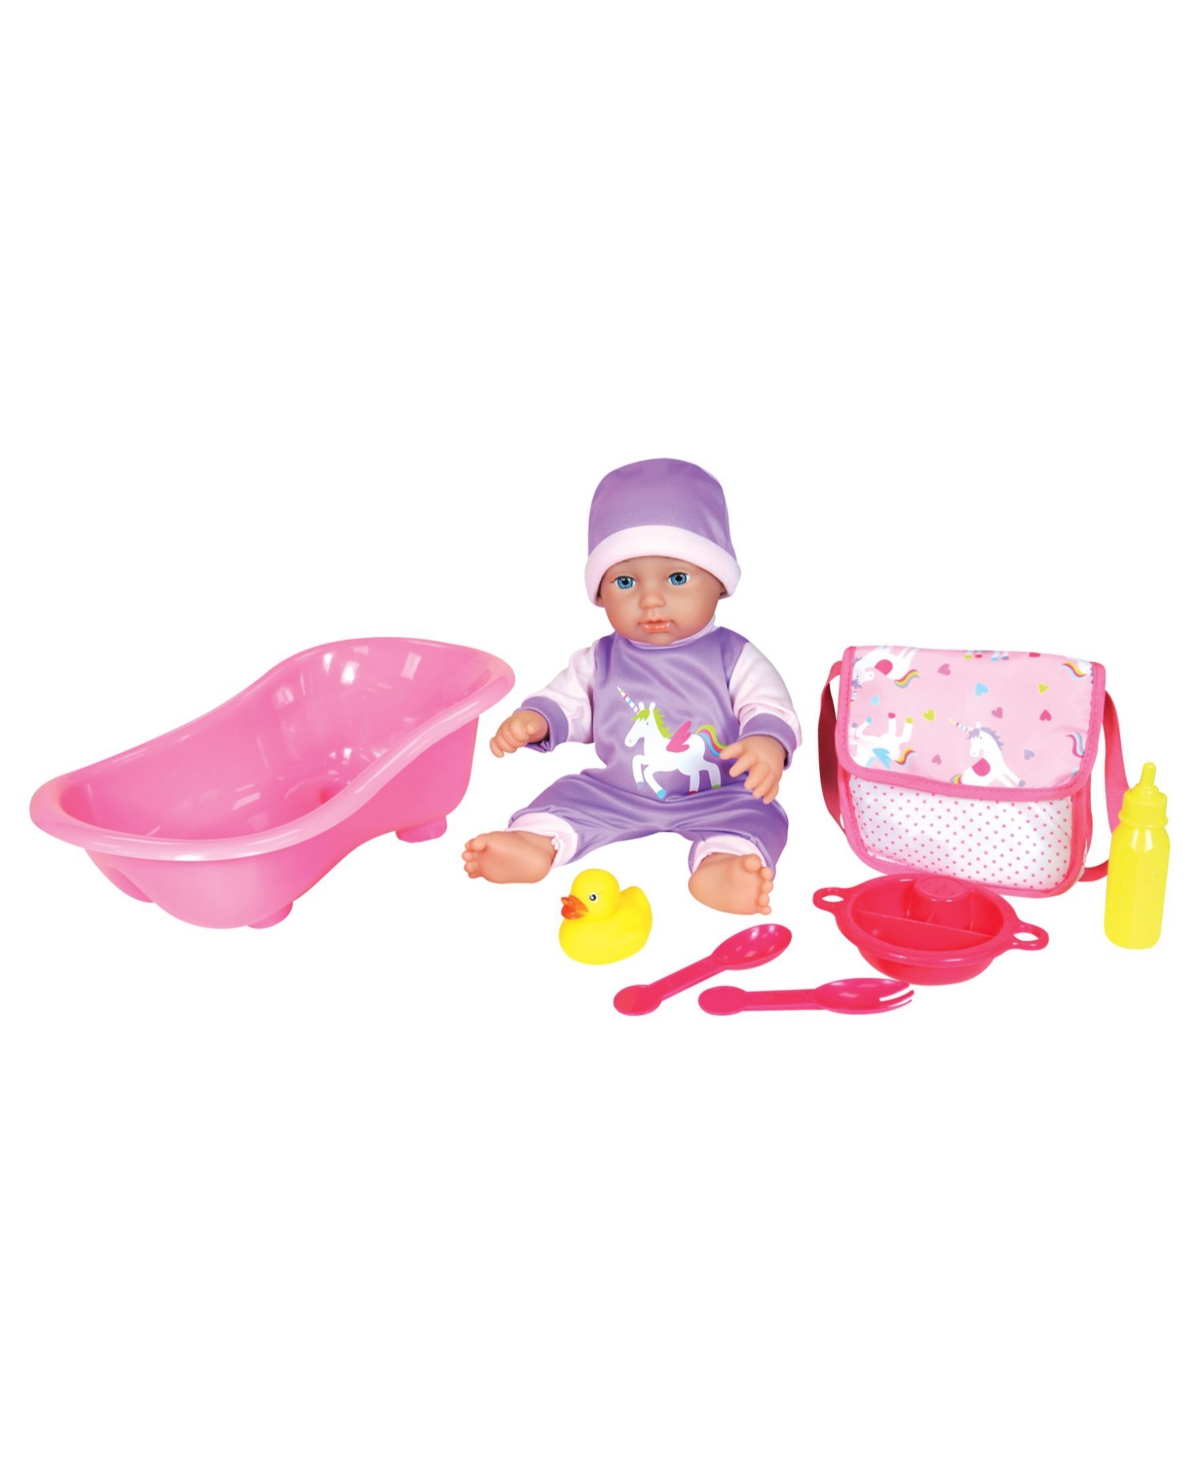 Lissi Dolls Baby Doll Bath Play Set, 7 Piece In Multi